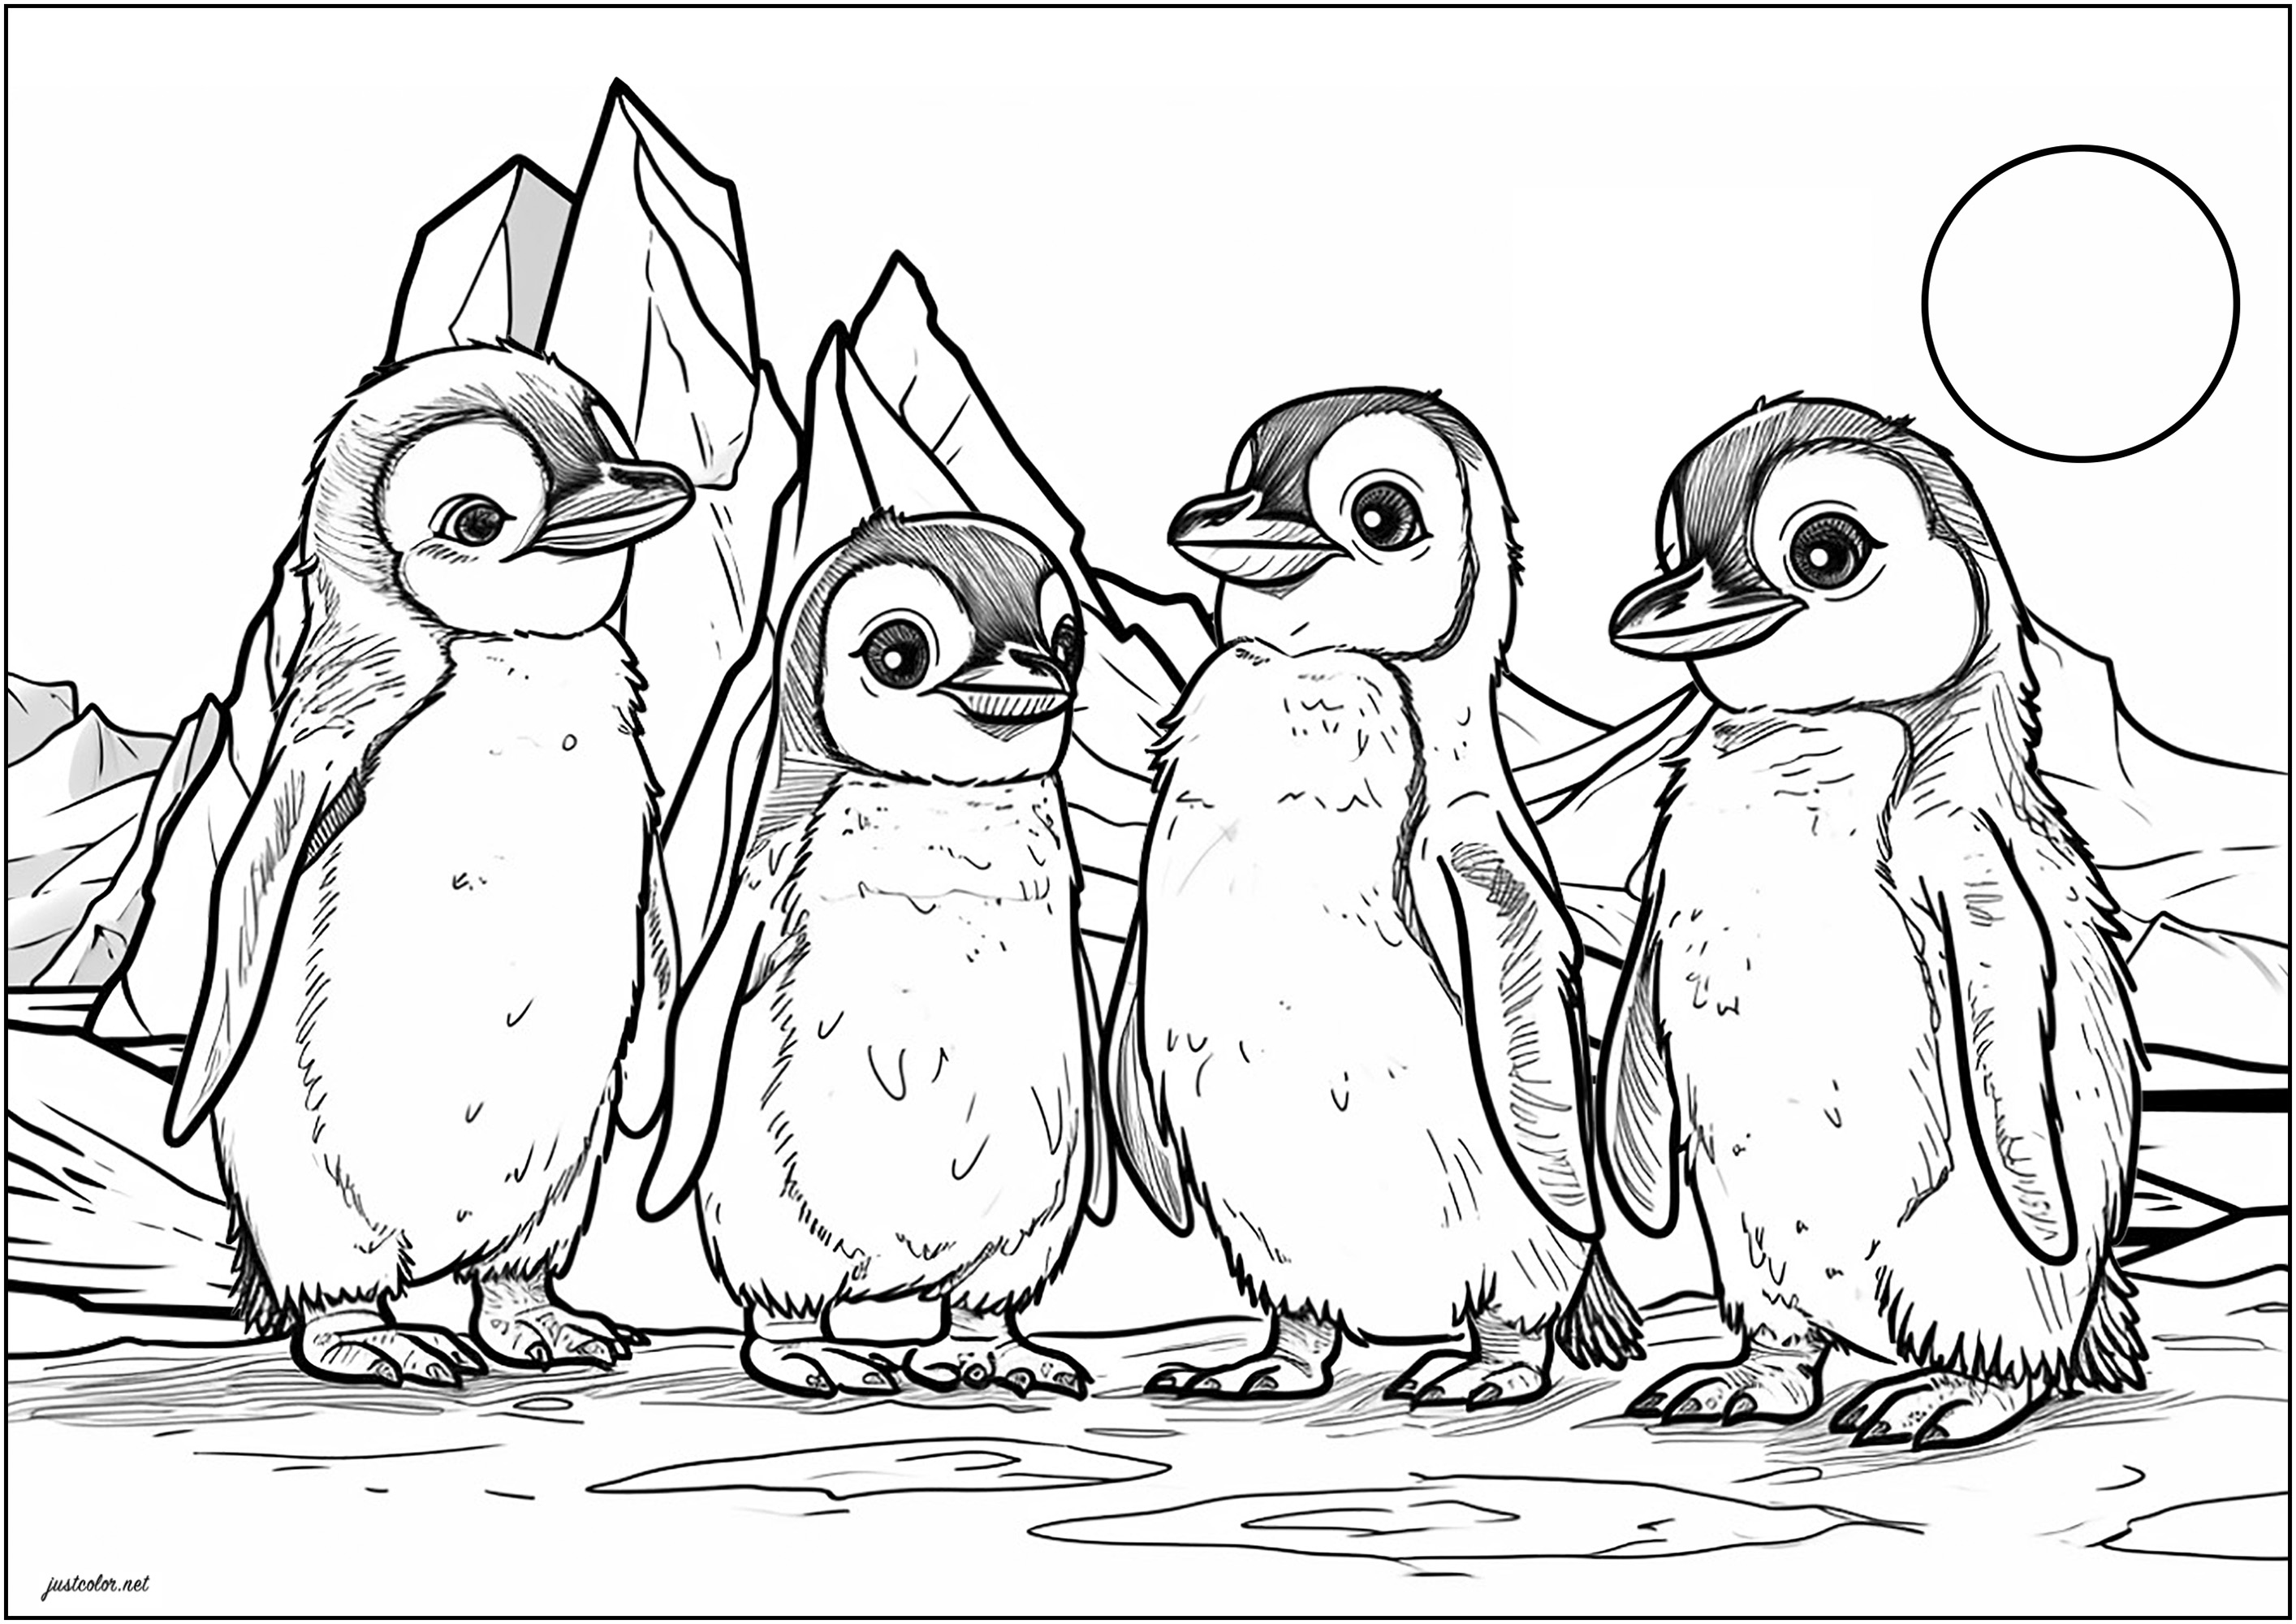 Quattro piccoli pinguini sulla banchisa